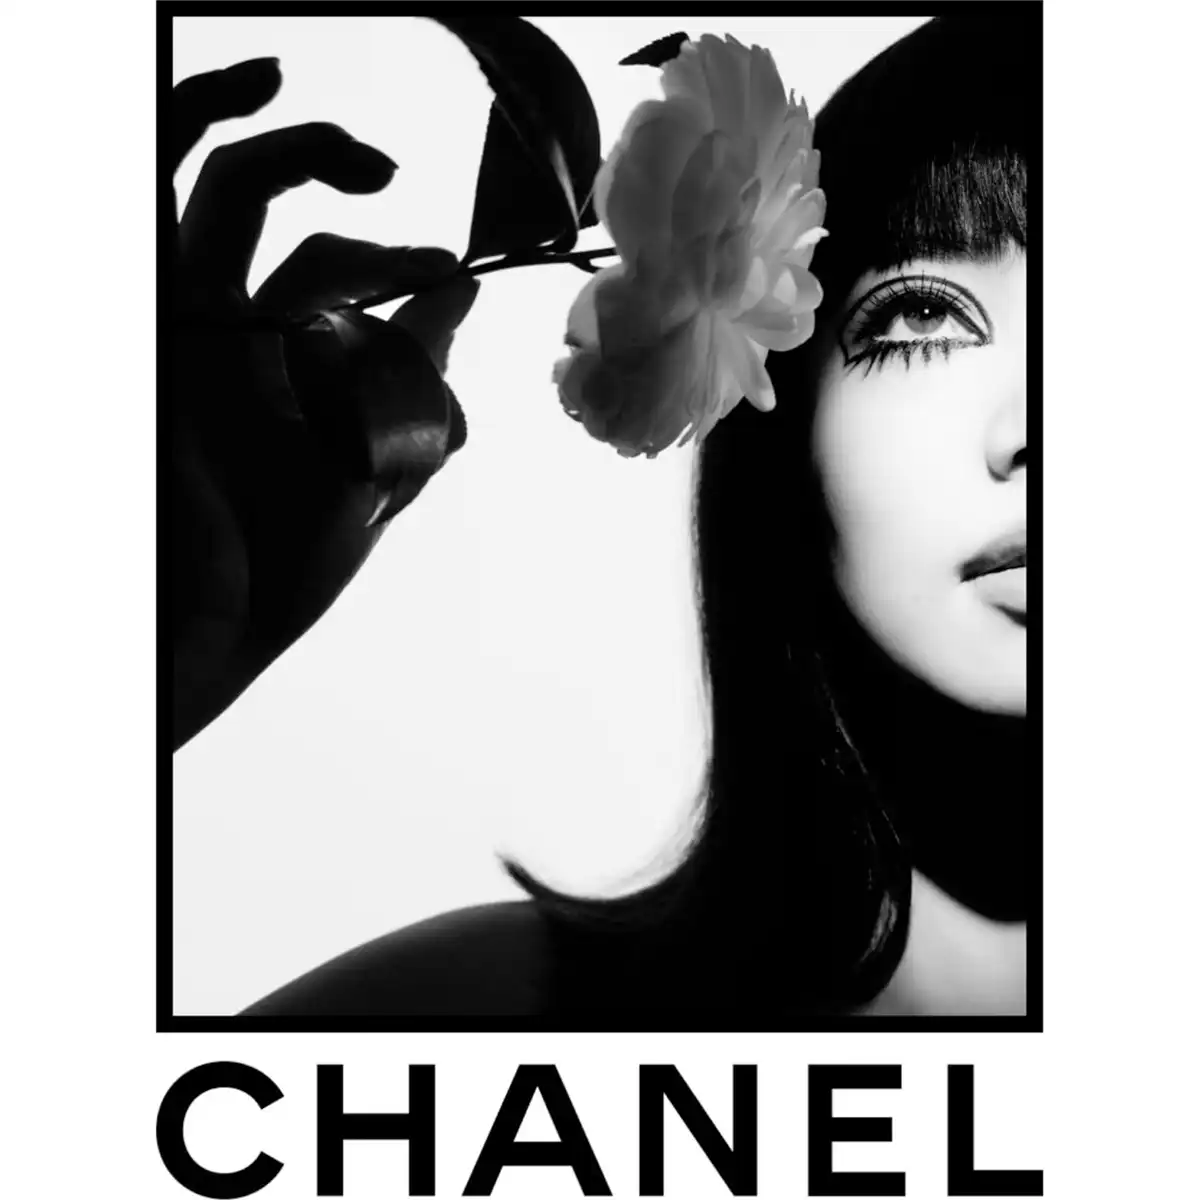 Chanel Paris fashion show square feature